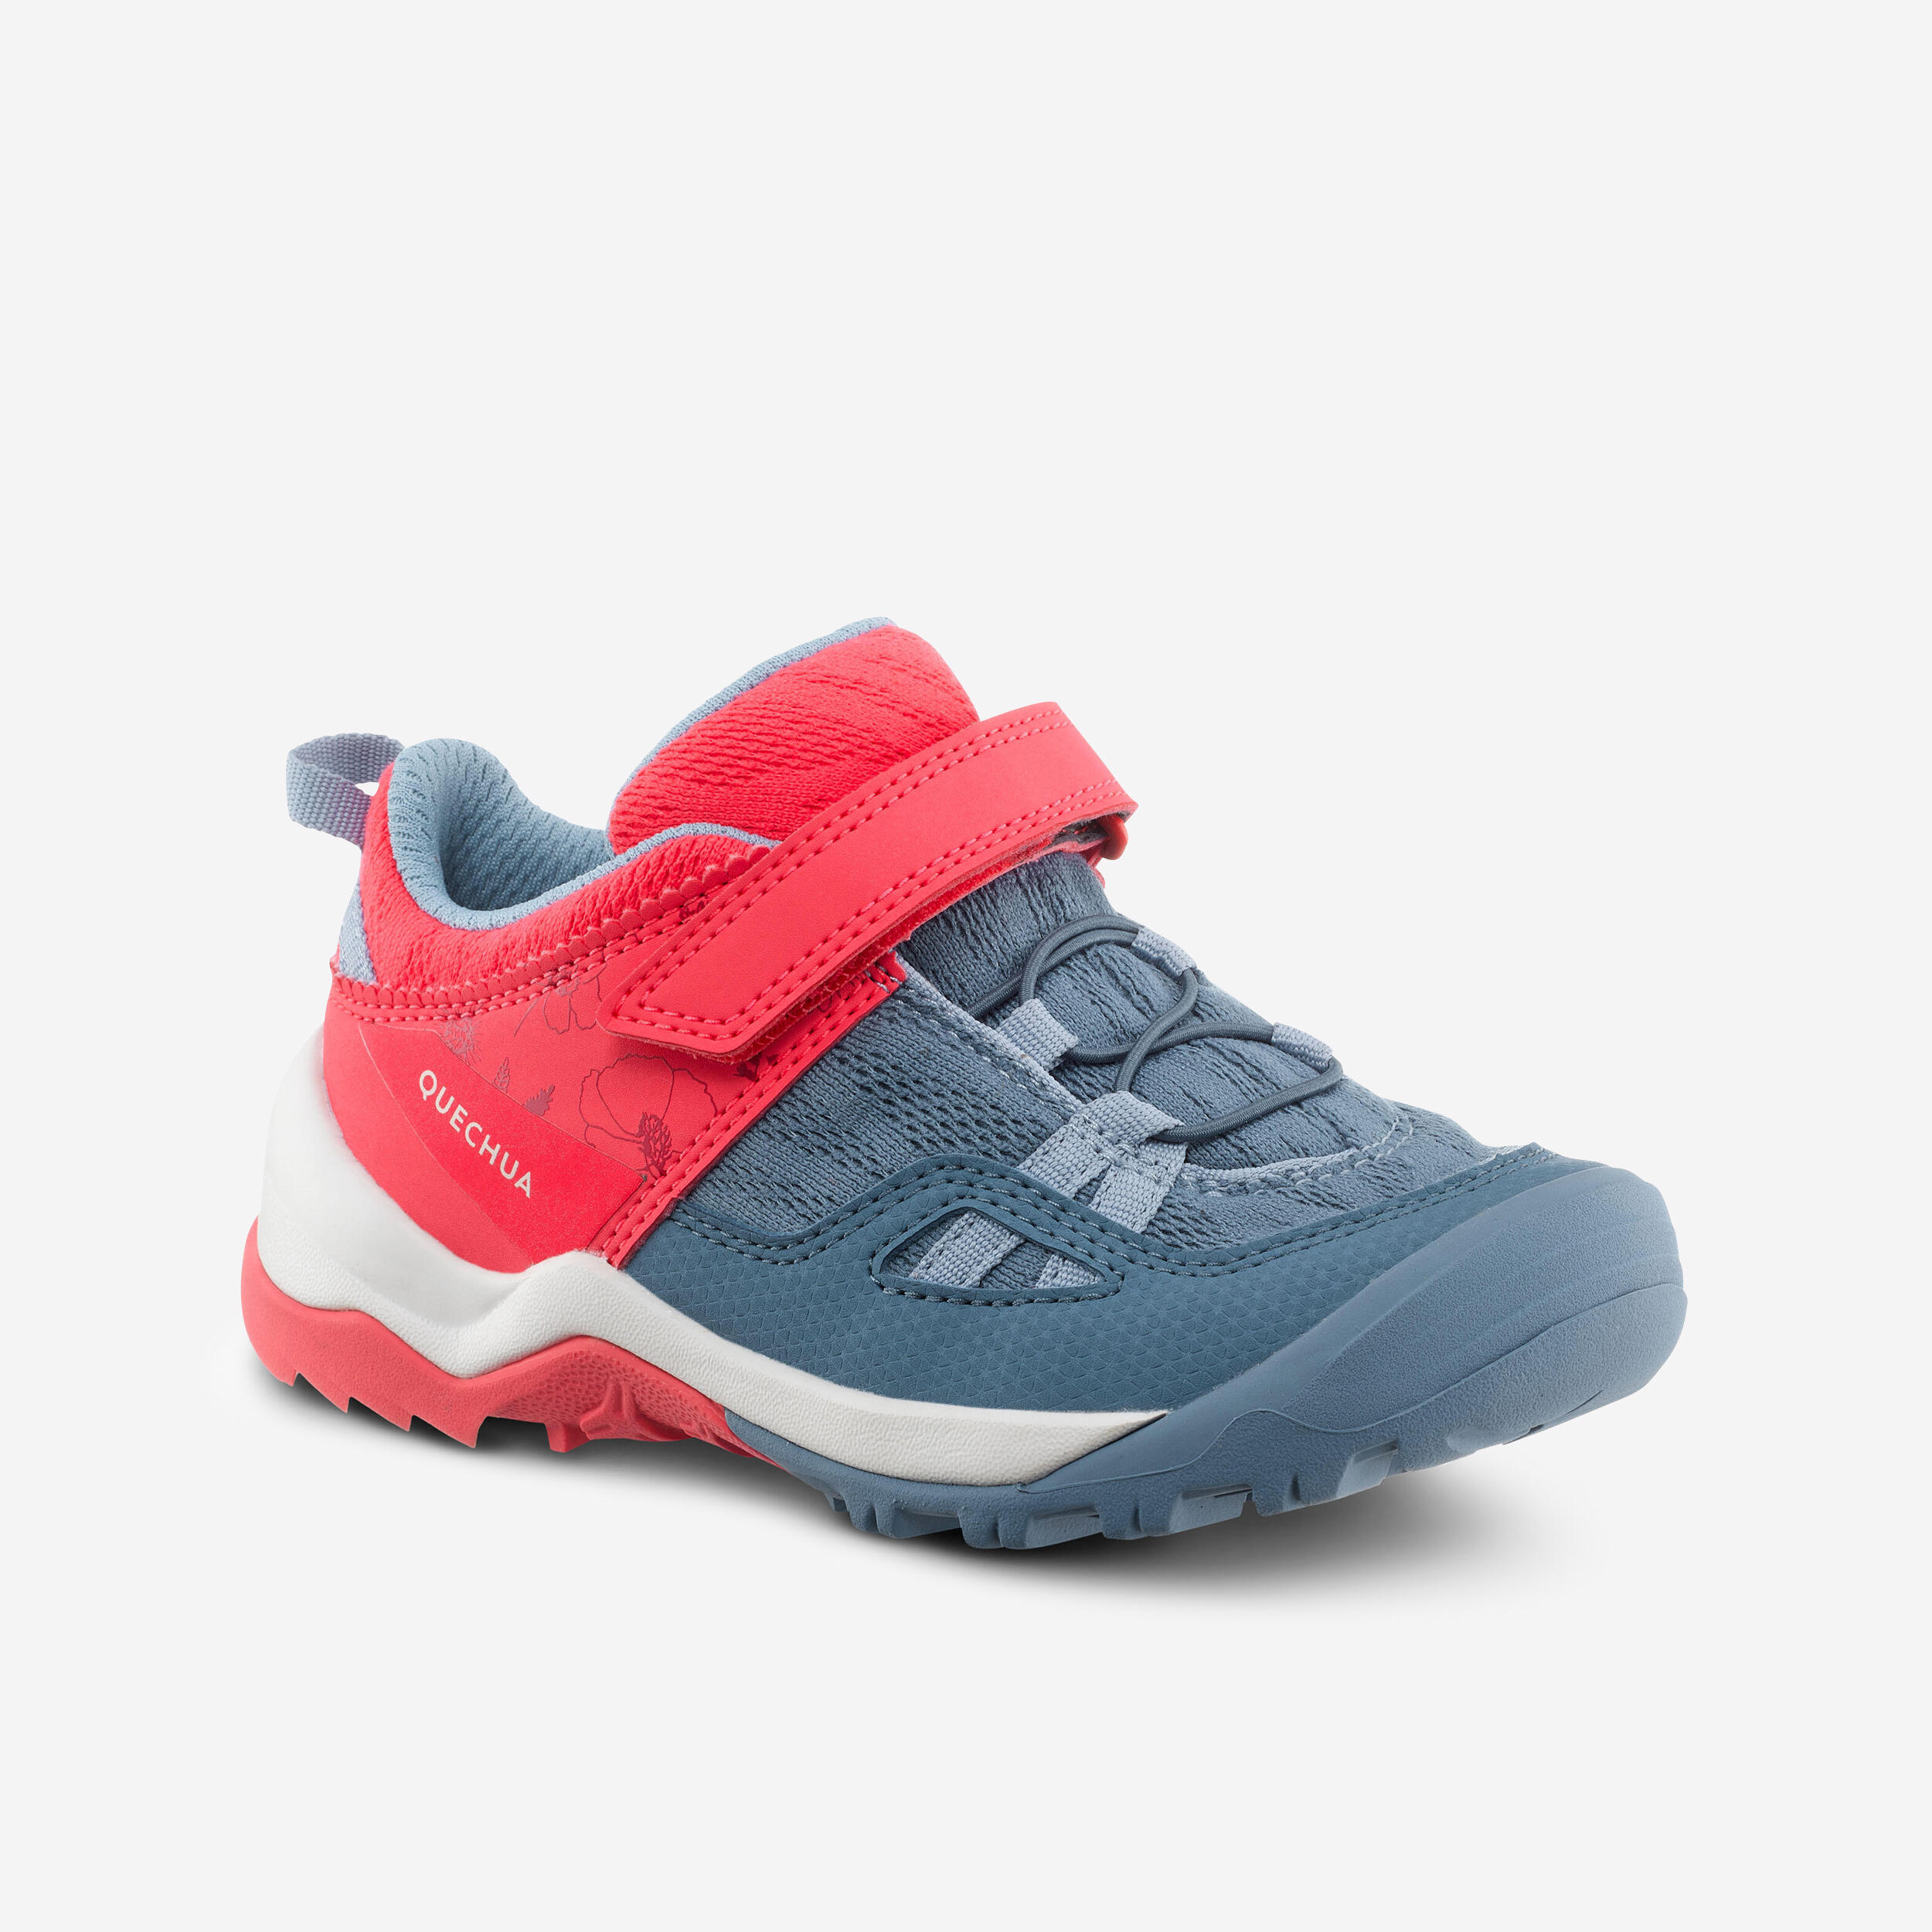 Chaussures de randonnée enfant – Crossrock - QUECHUA